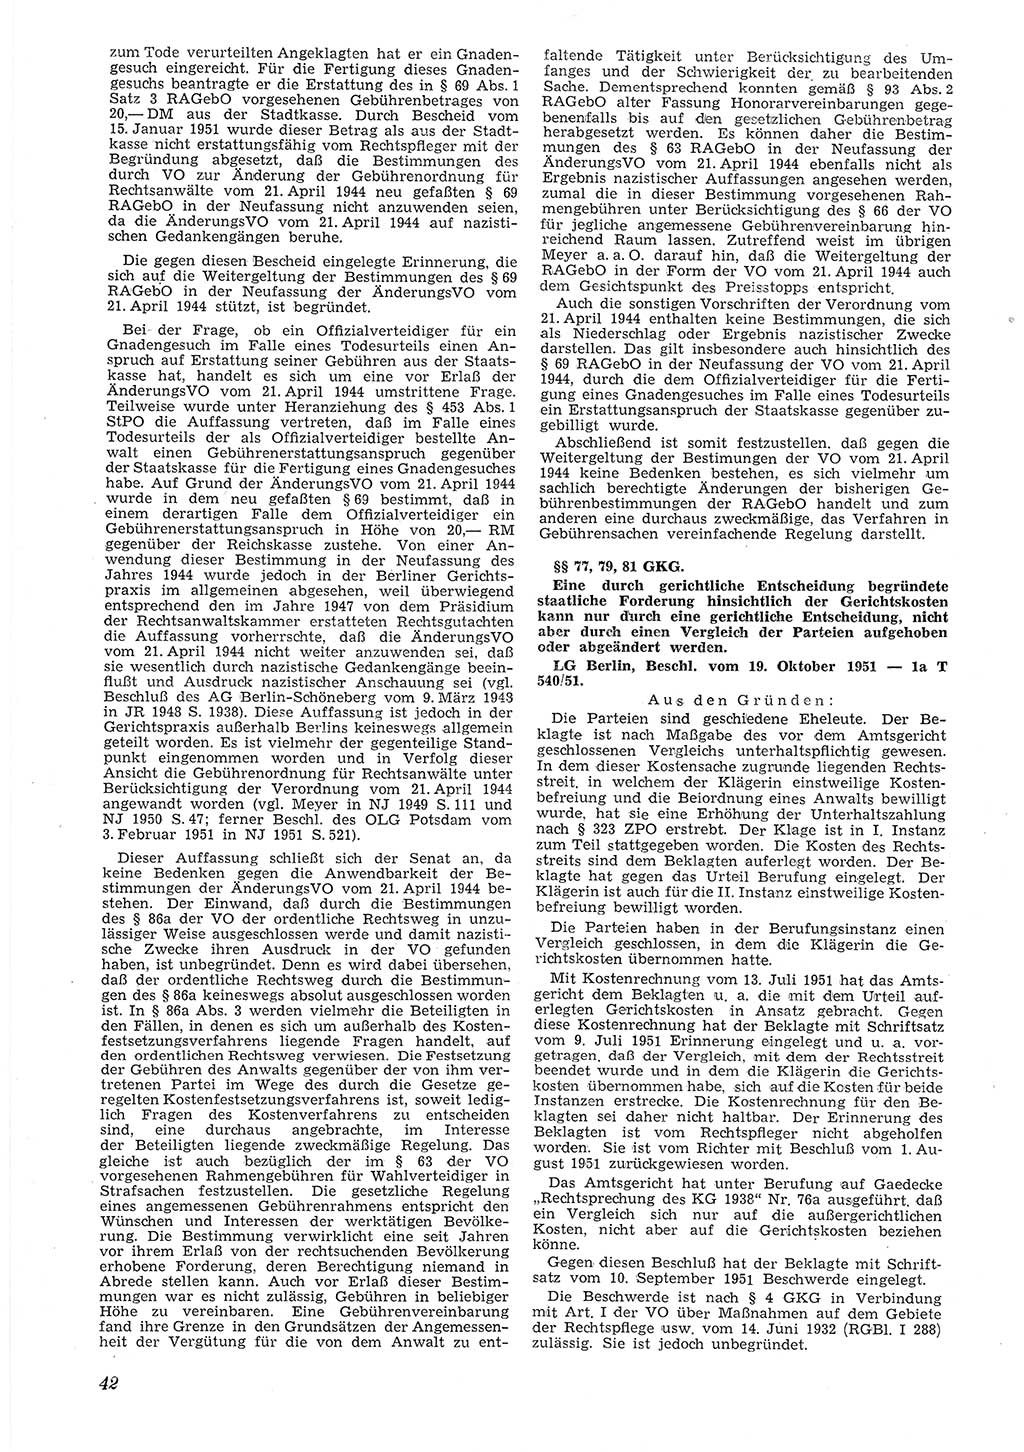 Neue Justiz (NJ), Zeitschrift für Recht und Rechtswissenschaft [Deutsche Demokratische Republik (DDR)], 6. Jahrgang 1952, Seite 42 (NJ DDR 1952, S. 42)